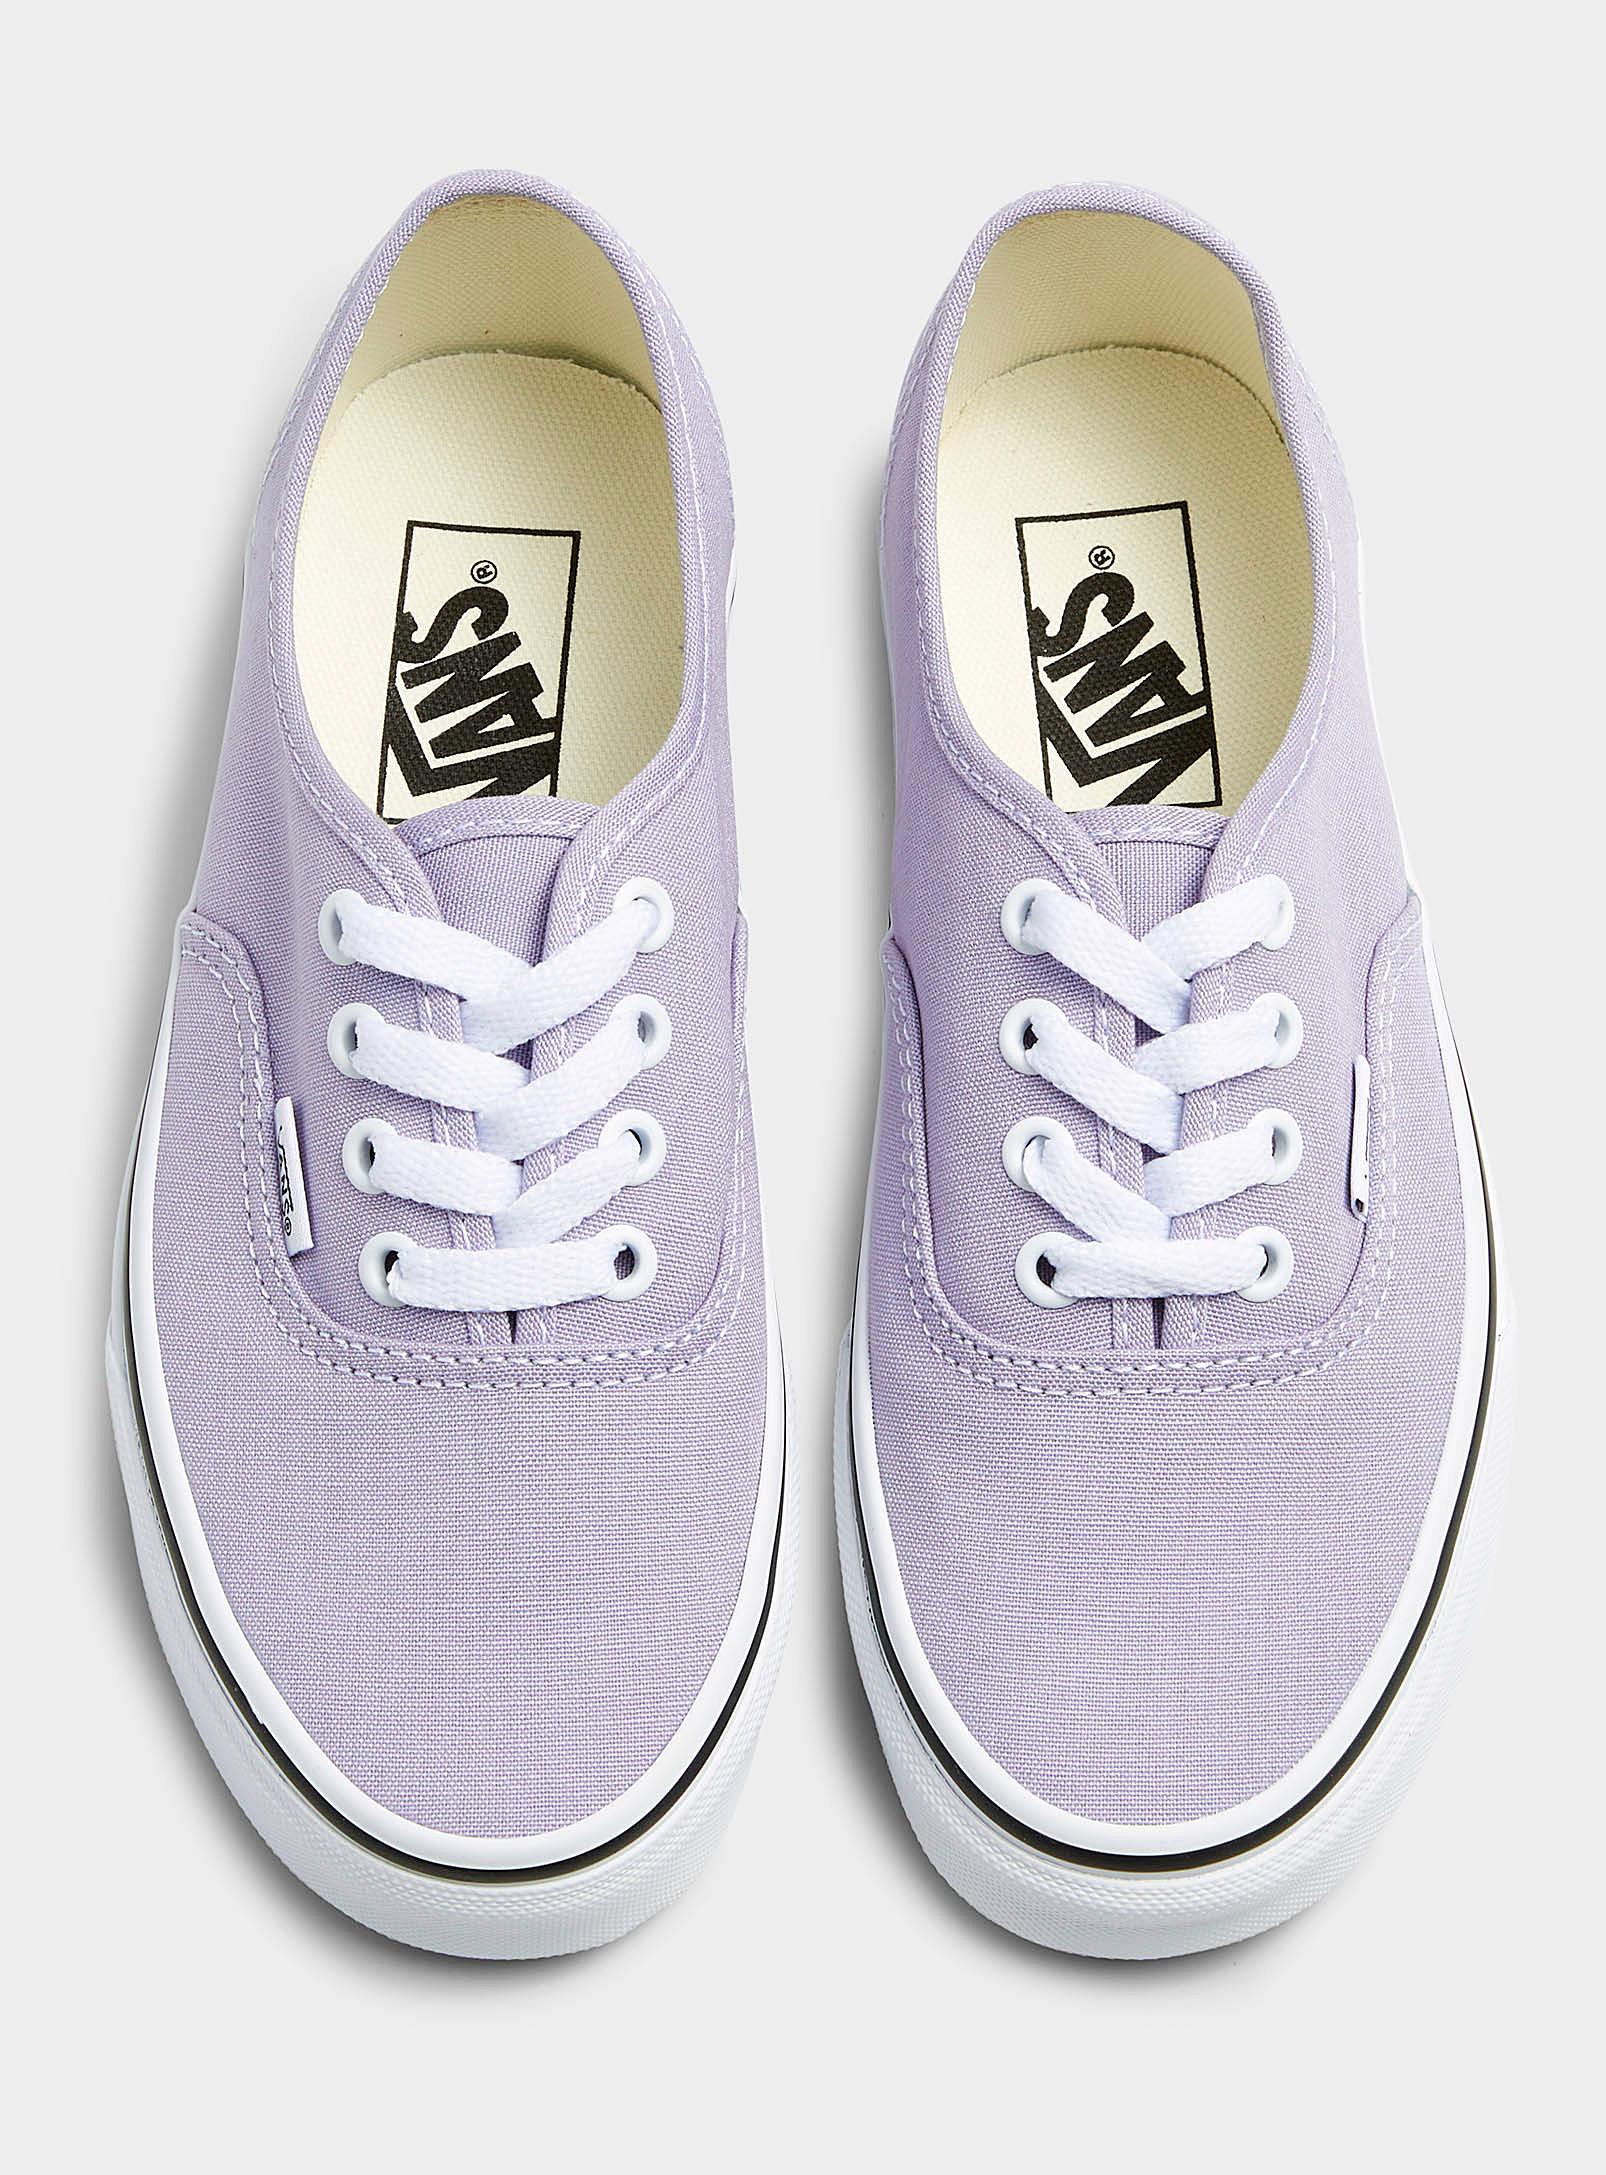 Vans Canvas Authentic Lavender Sneakers Women in Mauve (Purple) | Lyst